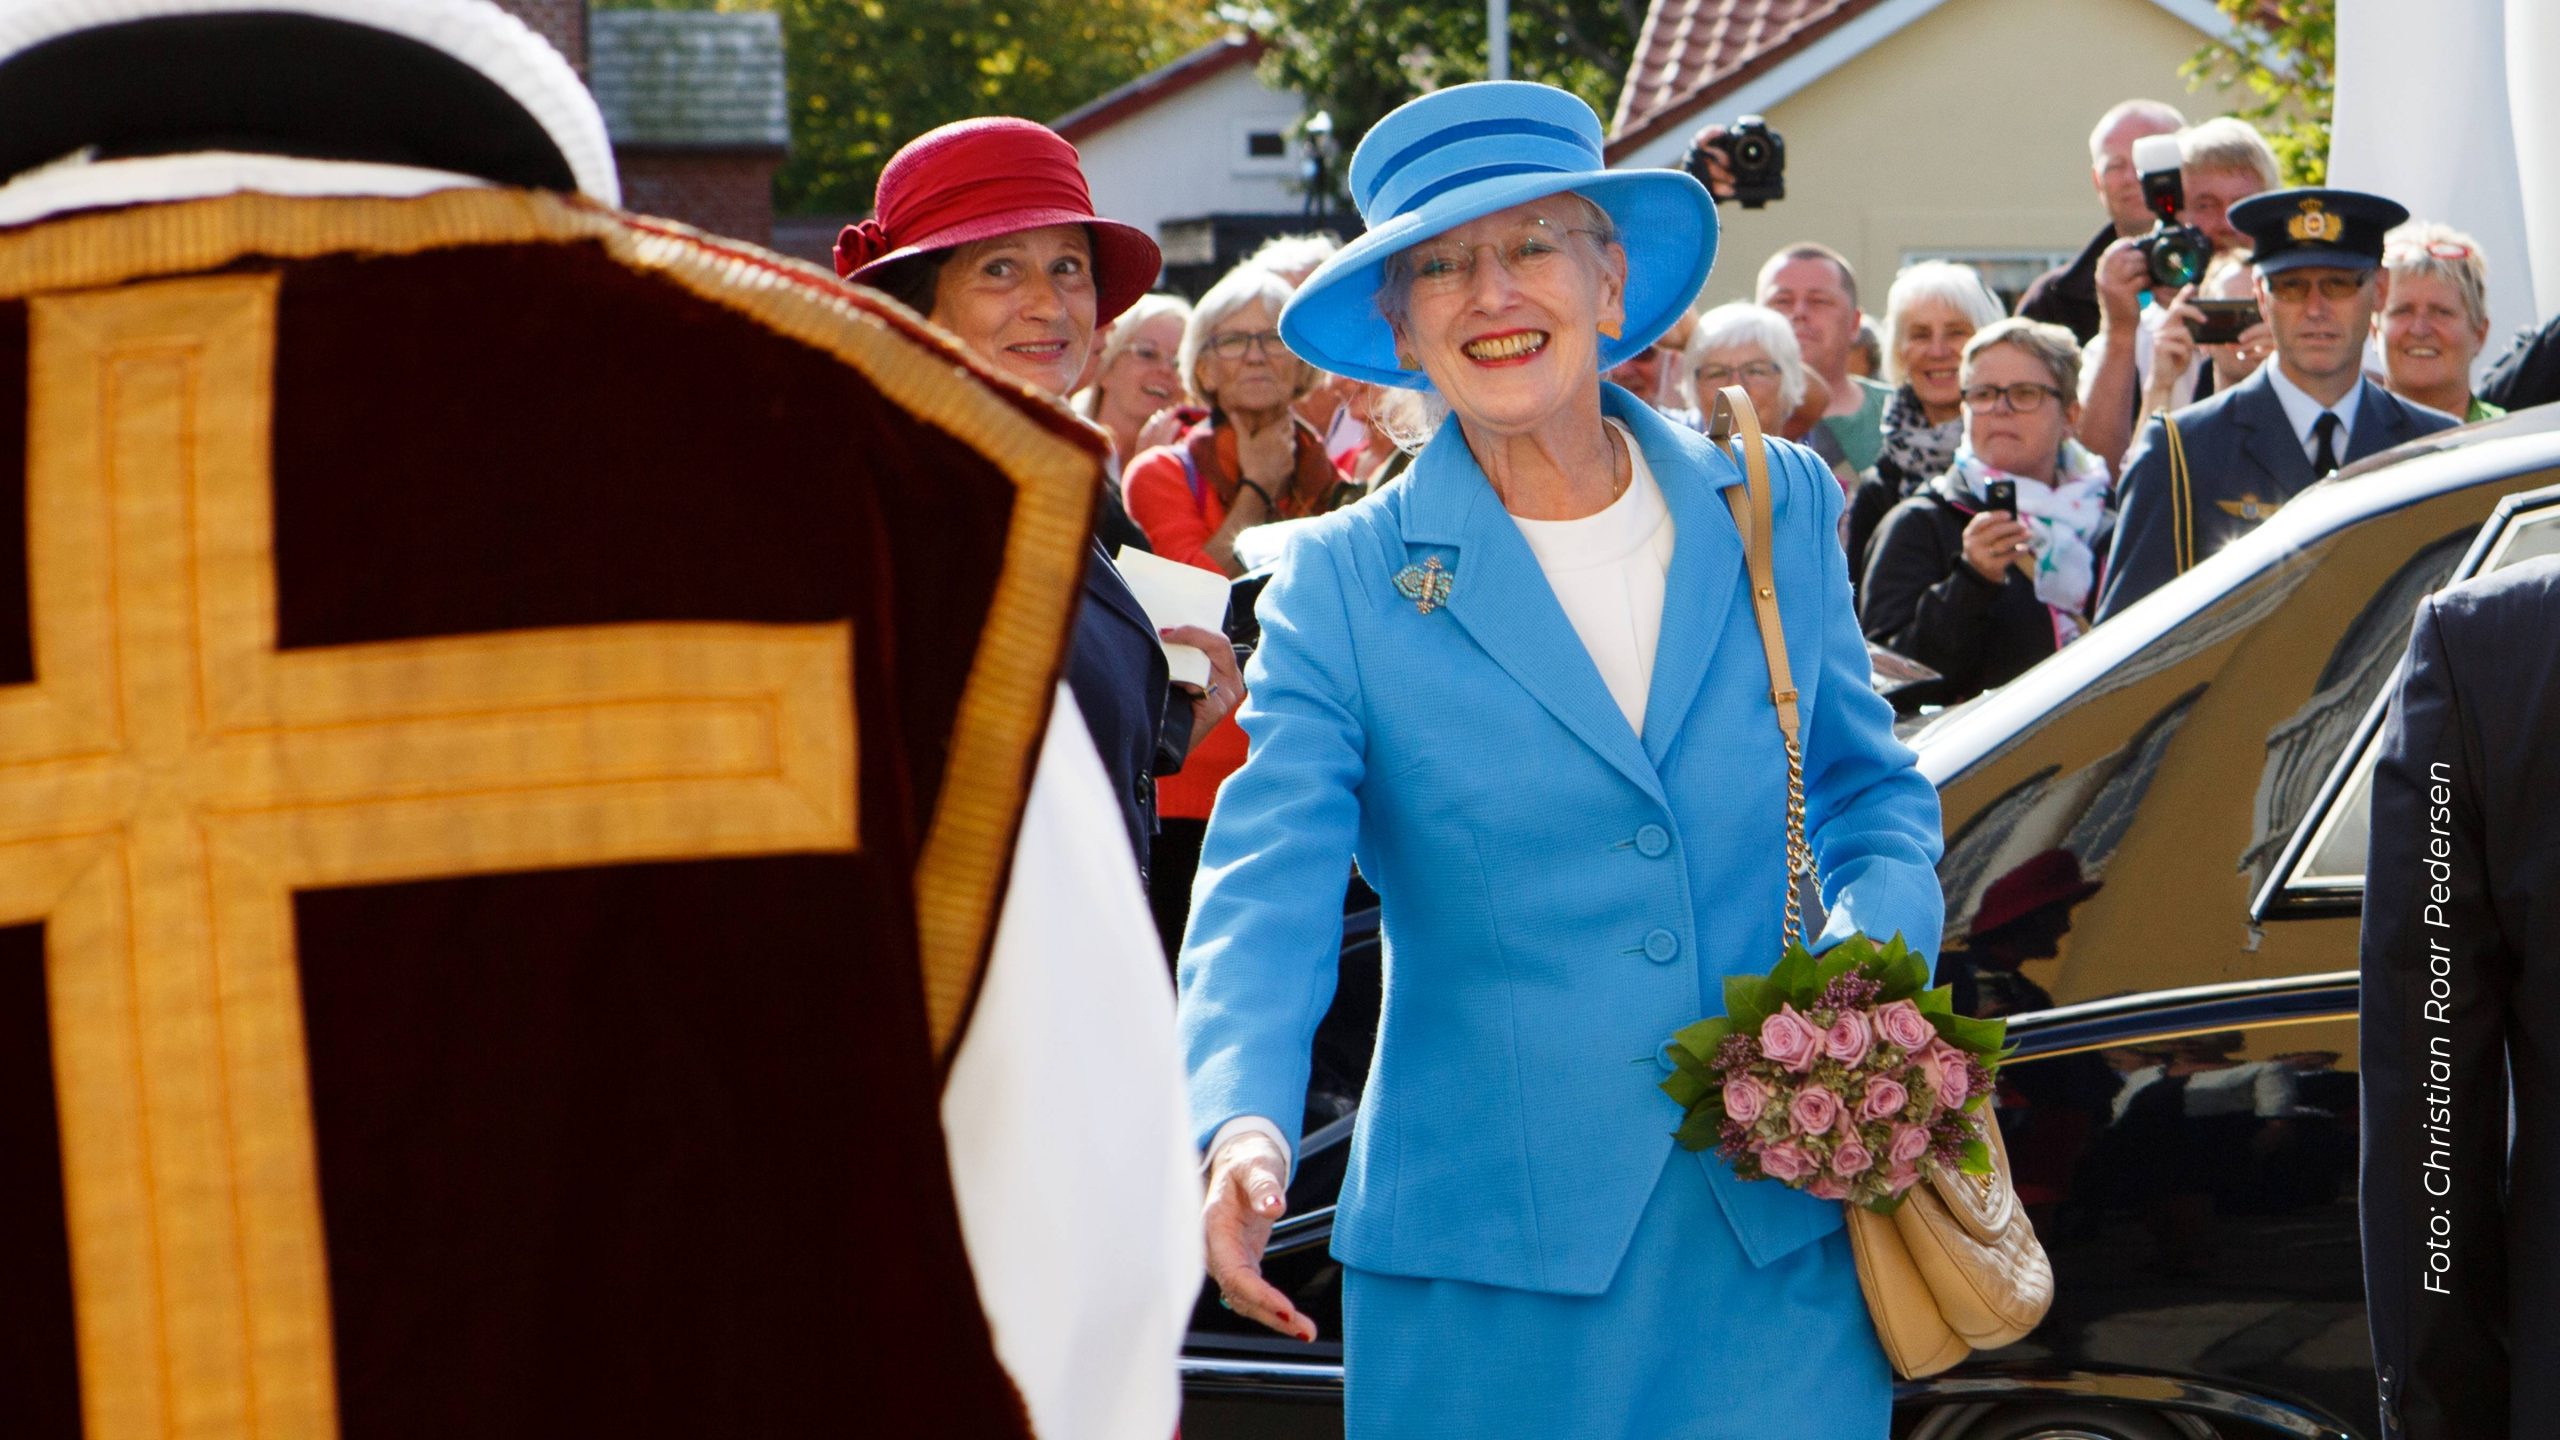 Dronning Margrethe klædt i blåt med en lyserød buket blomster i hånden hilsende på en præst, der ses fra ryggen. I baggrunden ser en folkemængde på.